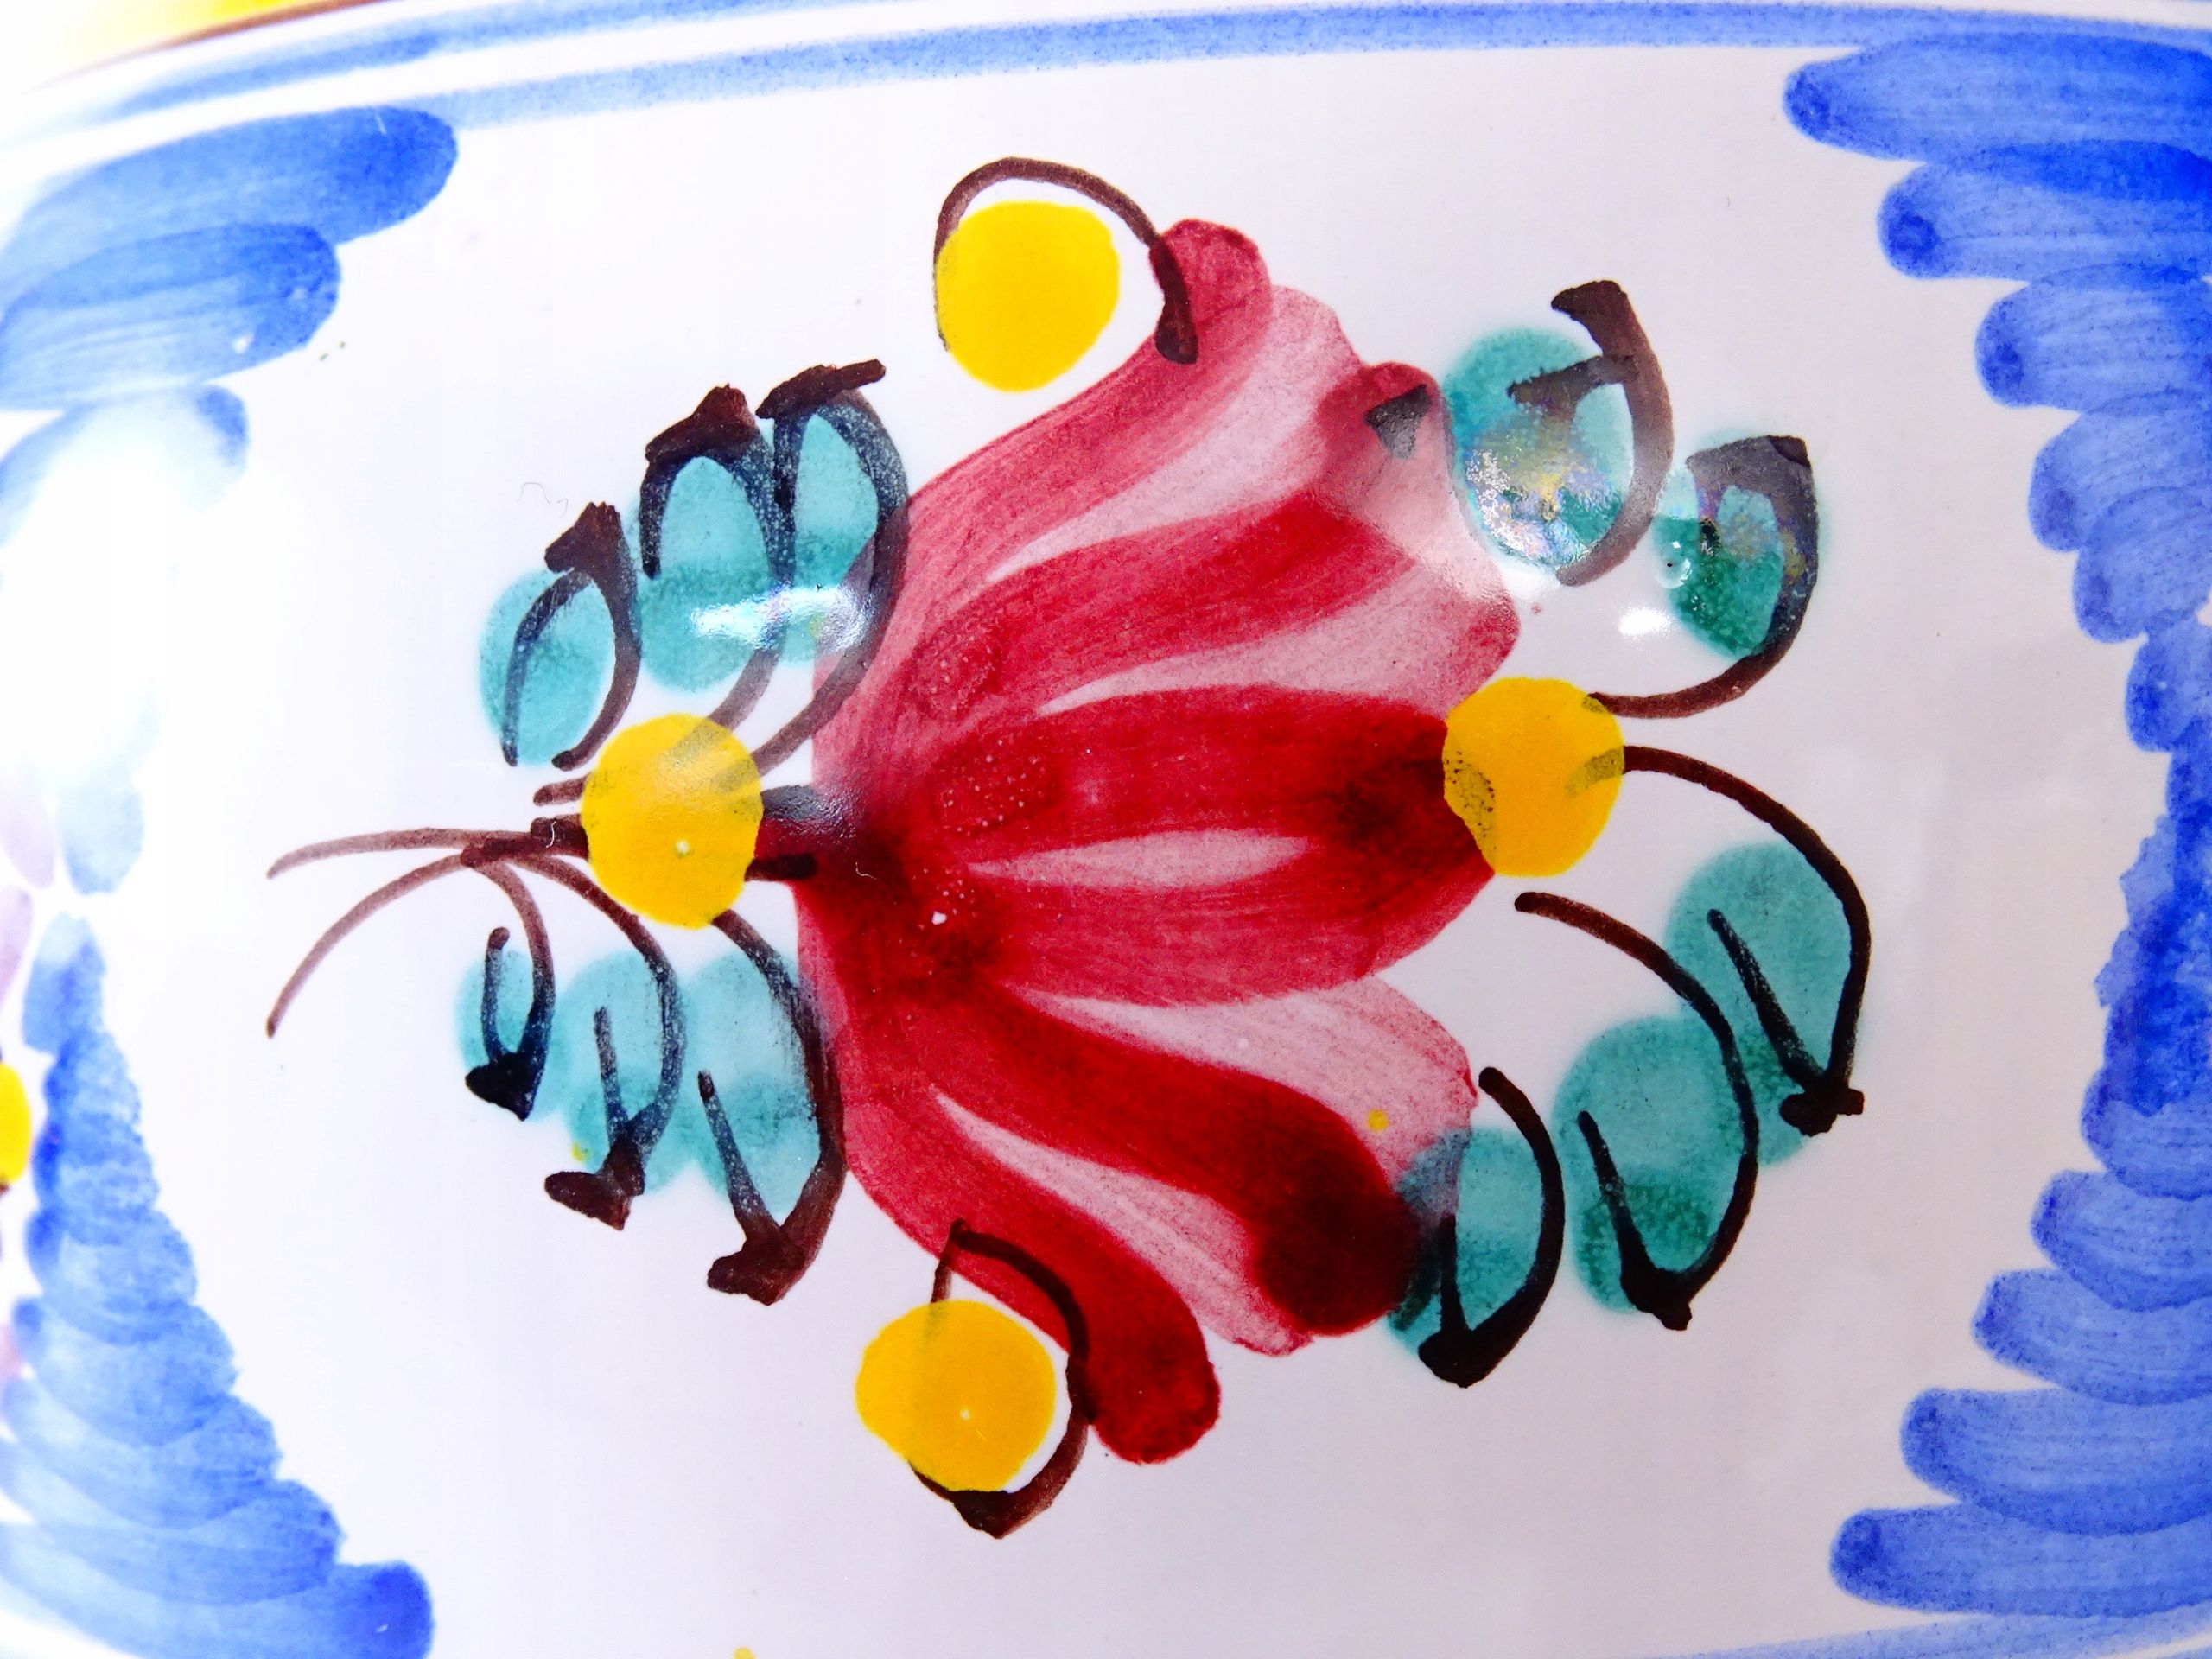 modra słowacja sygnowany ceramiczny wazon